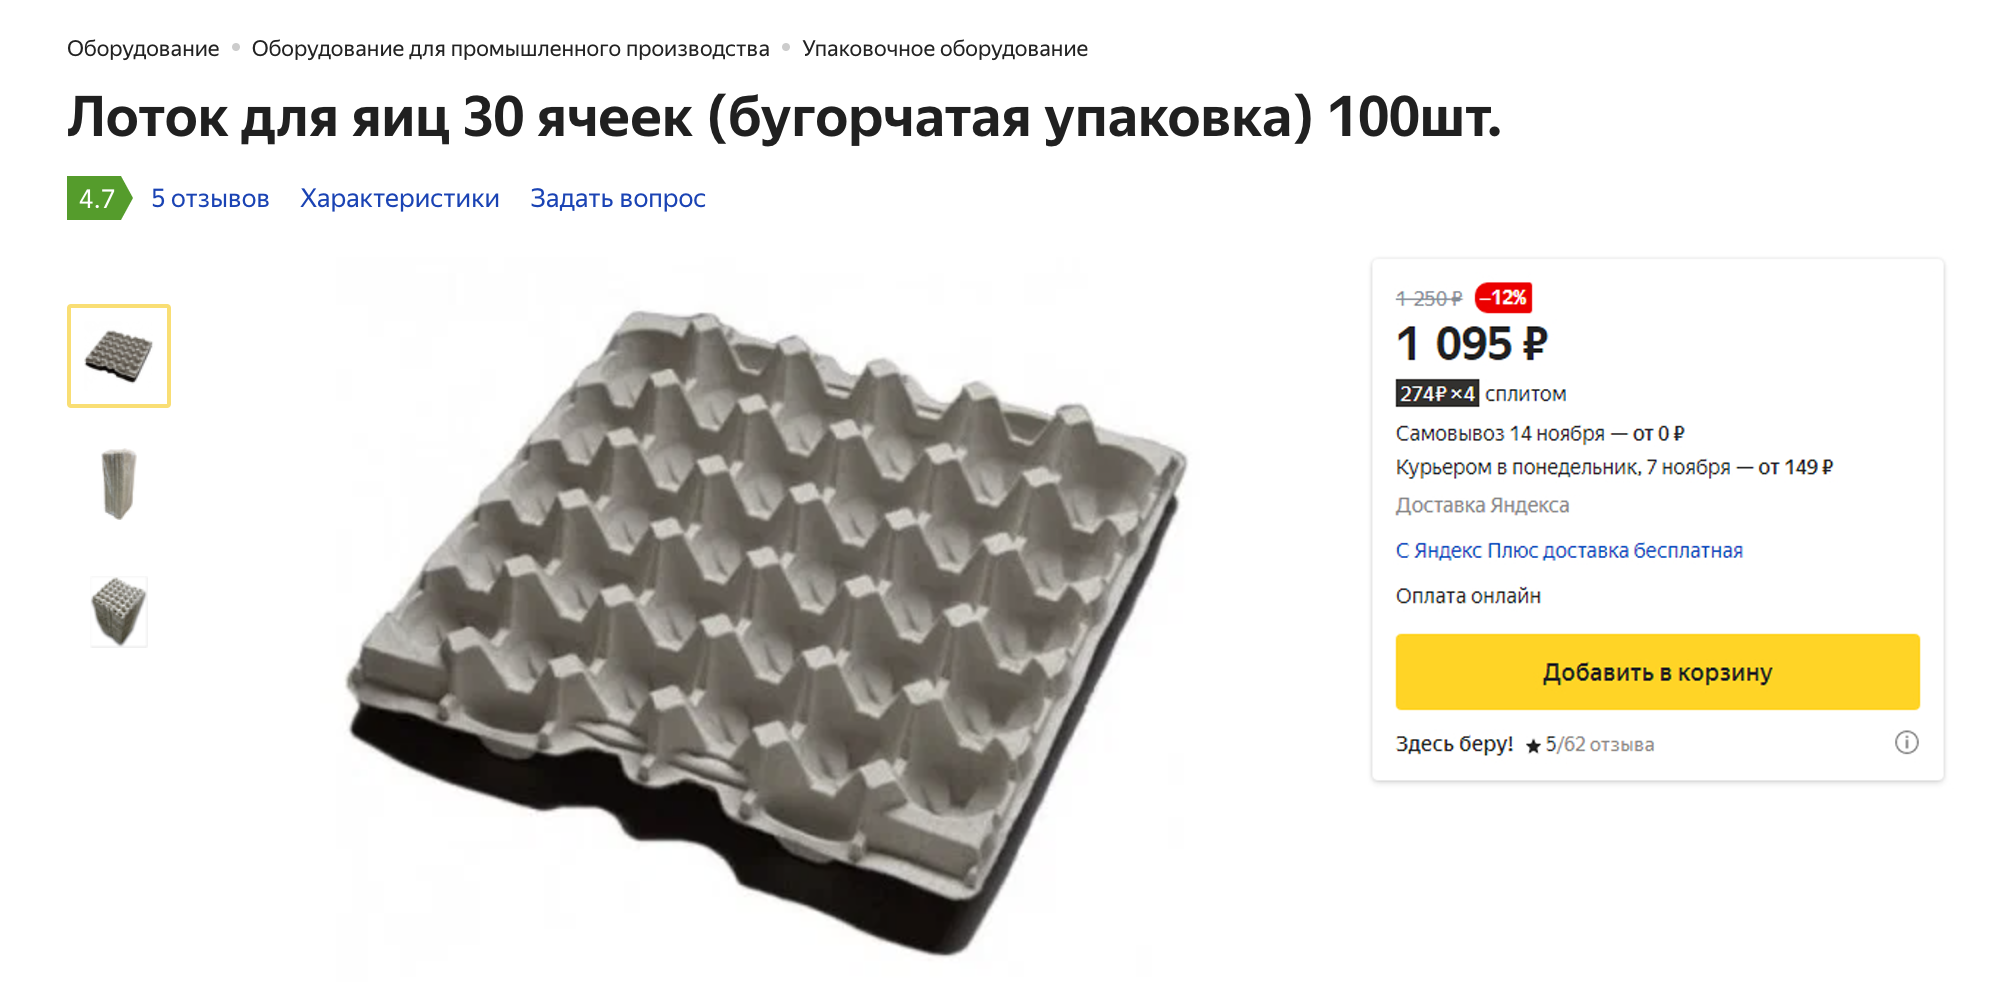 Лотки для яиц продают по 11 ₽ за штуку. Источник: market.yandex.ru